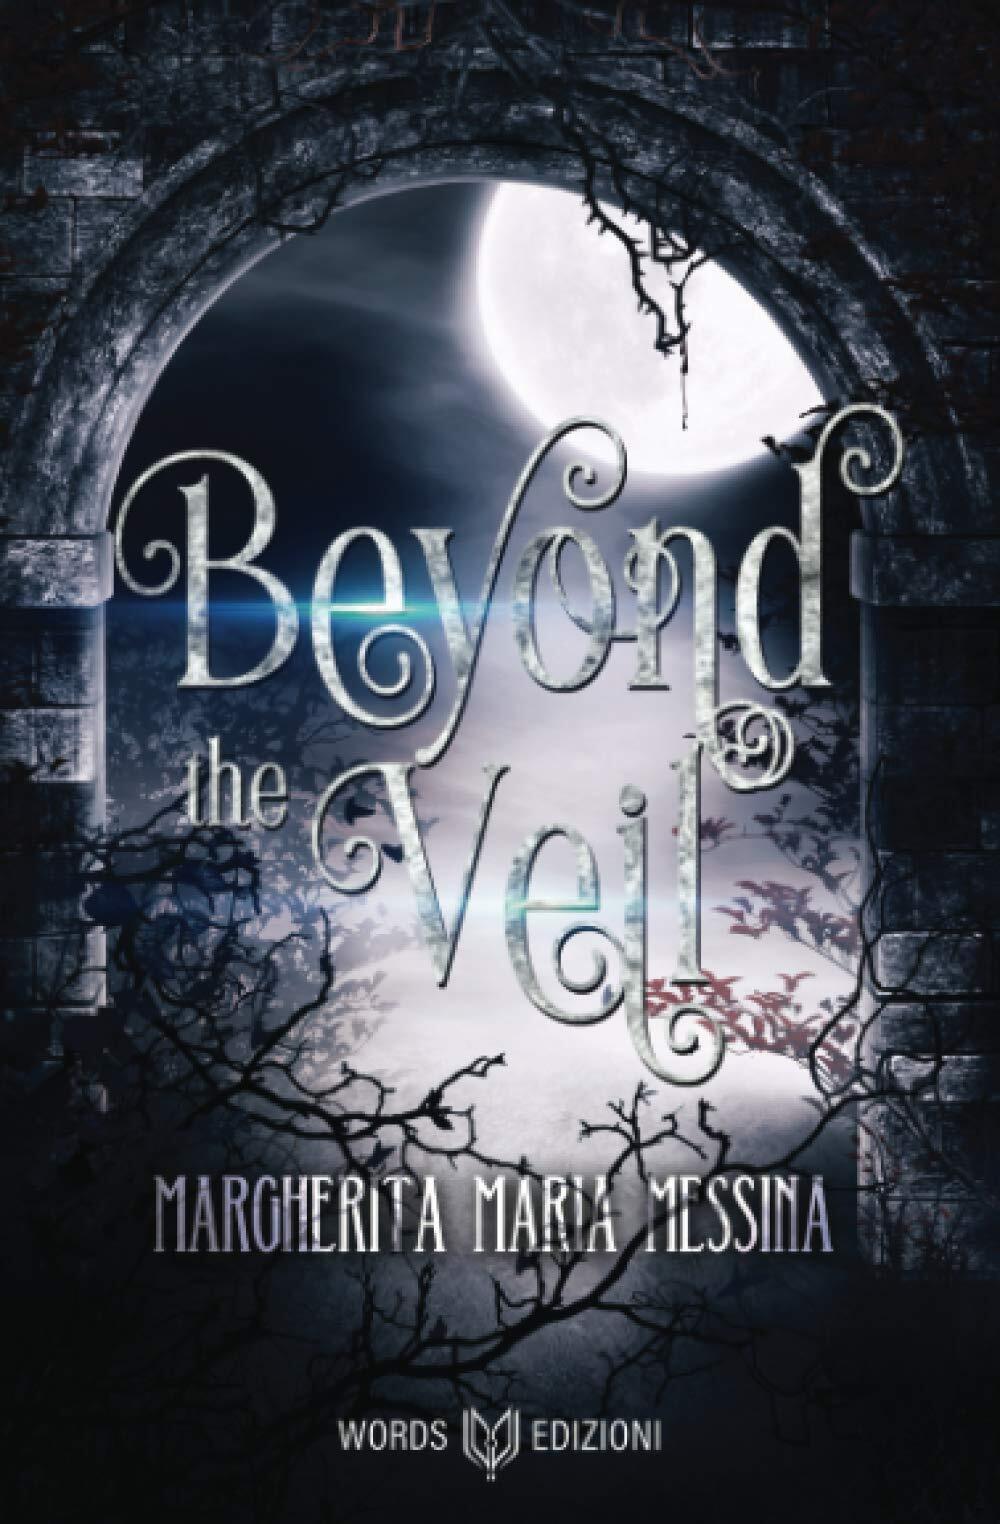 Beyond the Veil - Margherita Maria Messina - Words Edizioni, 2020